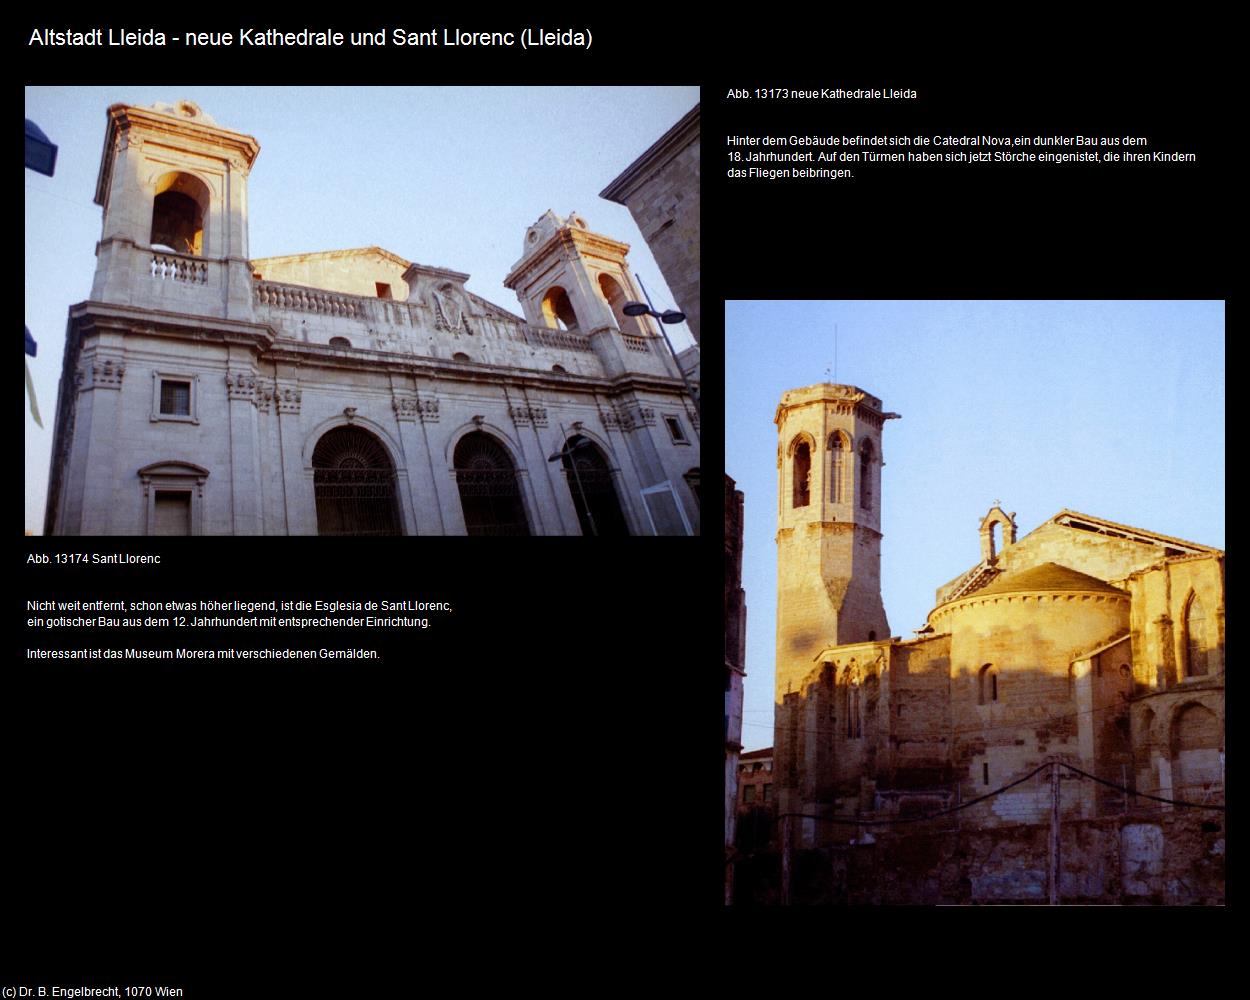 Altstadt-Sant Llorenc und neu Kathedrale (Lleida) in KATALONIEN